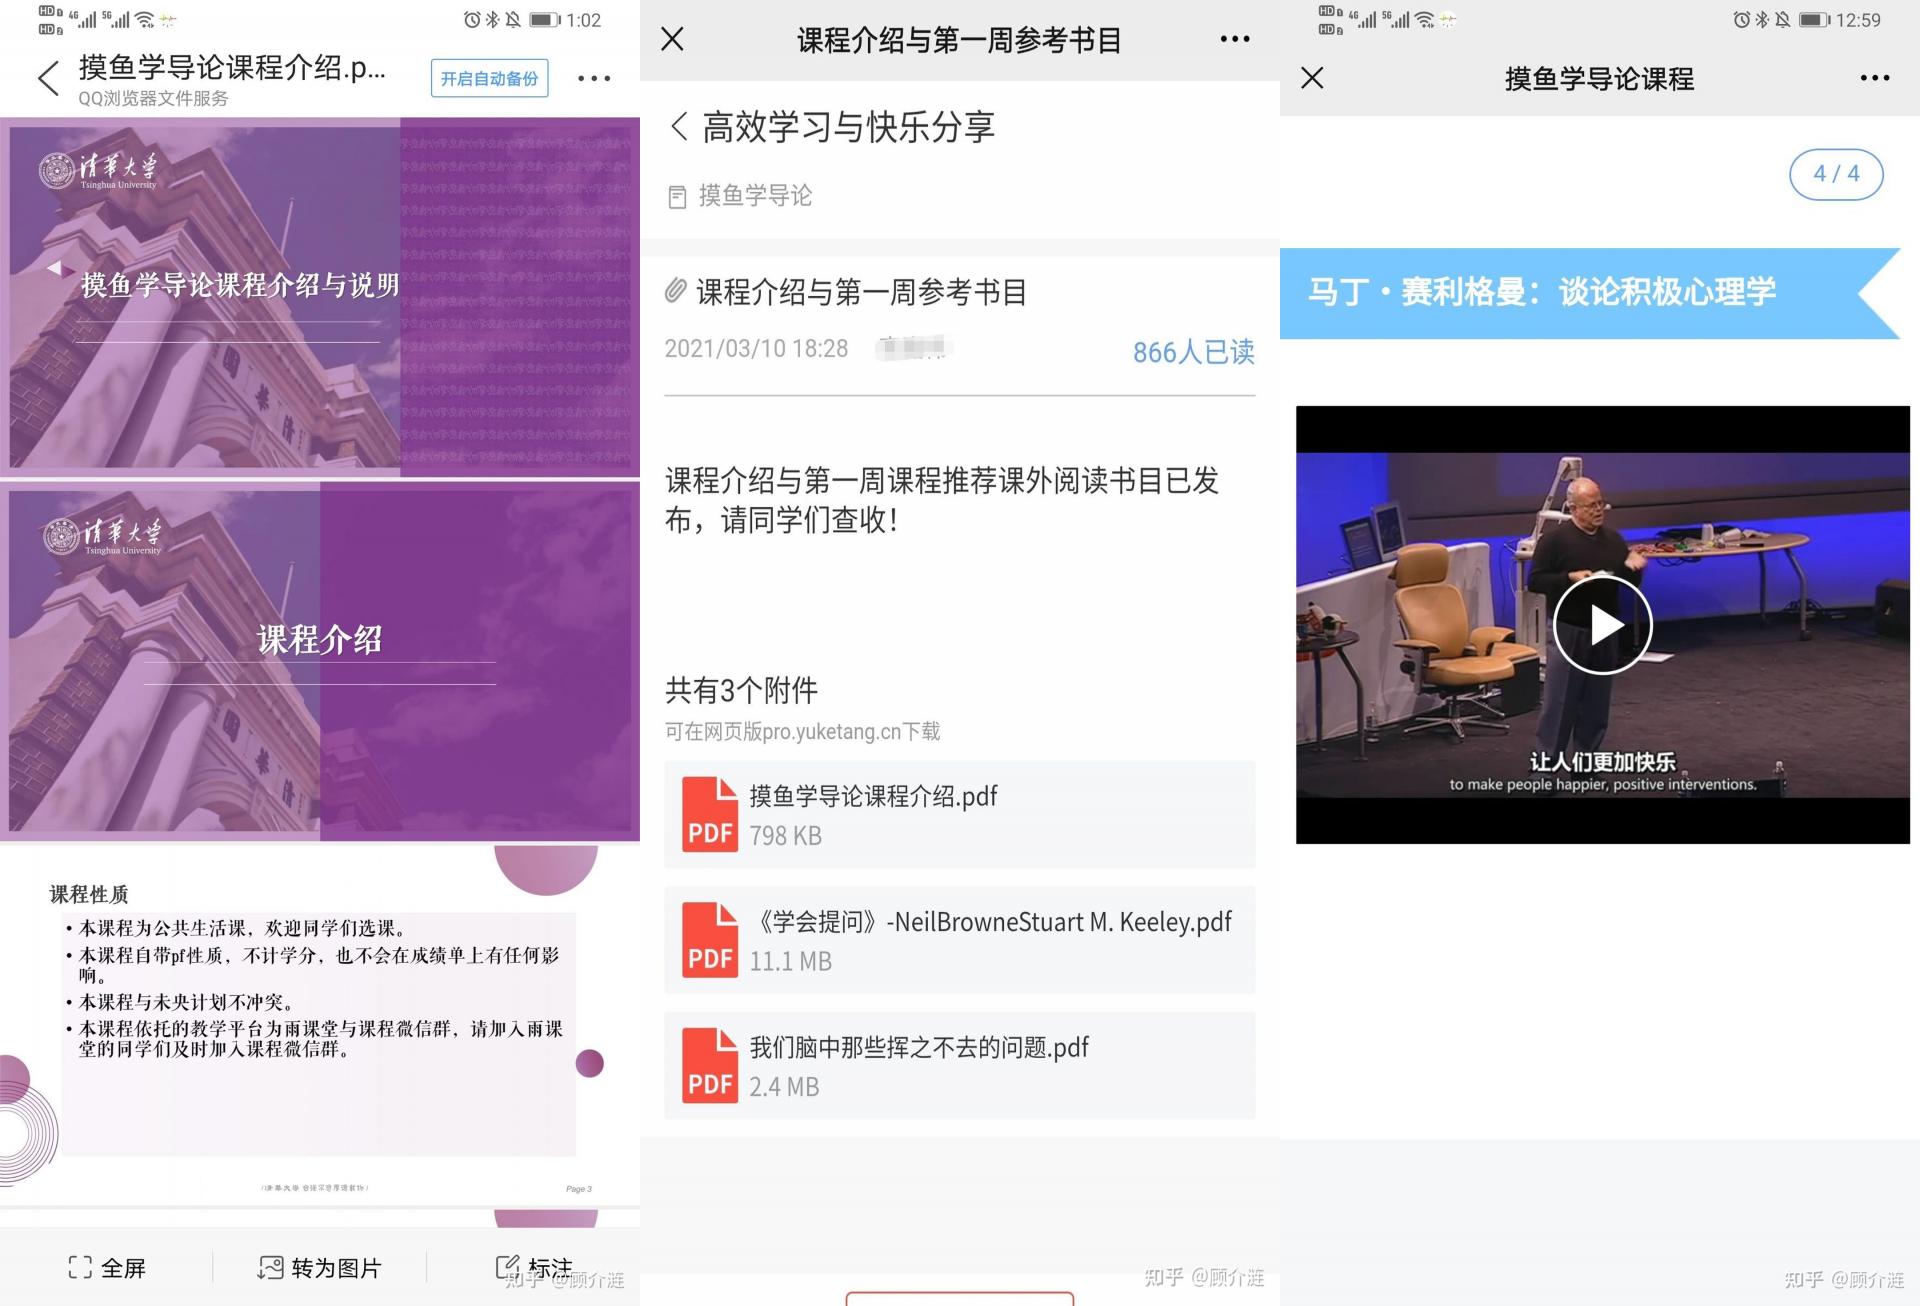 16158852645683 - L'”Introduzione alla pesca” di Tsinghua è esplosa su Internet. Perché 996 sta diventando sempre più disgustoso?